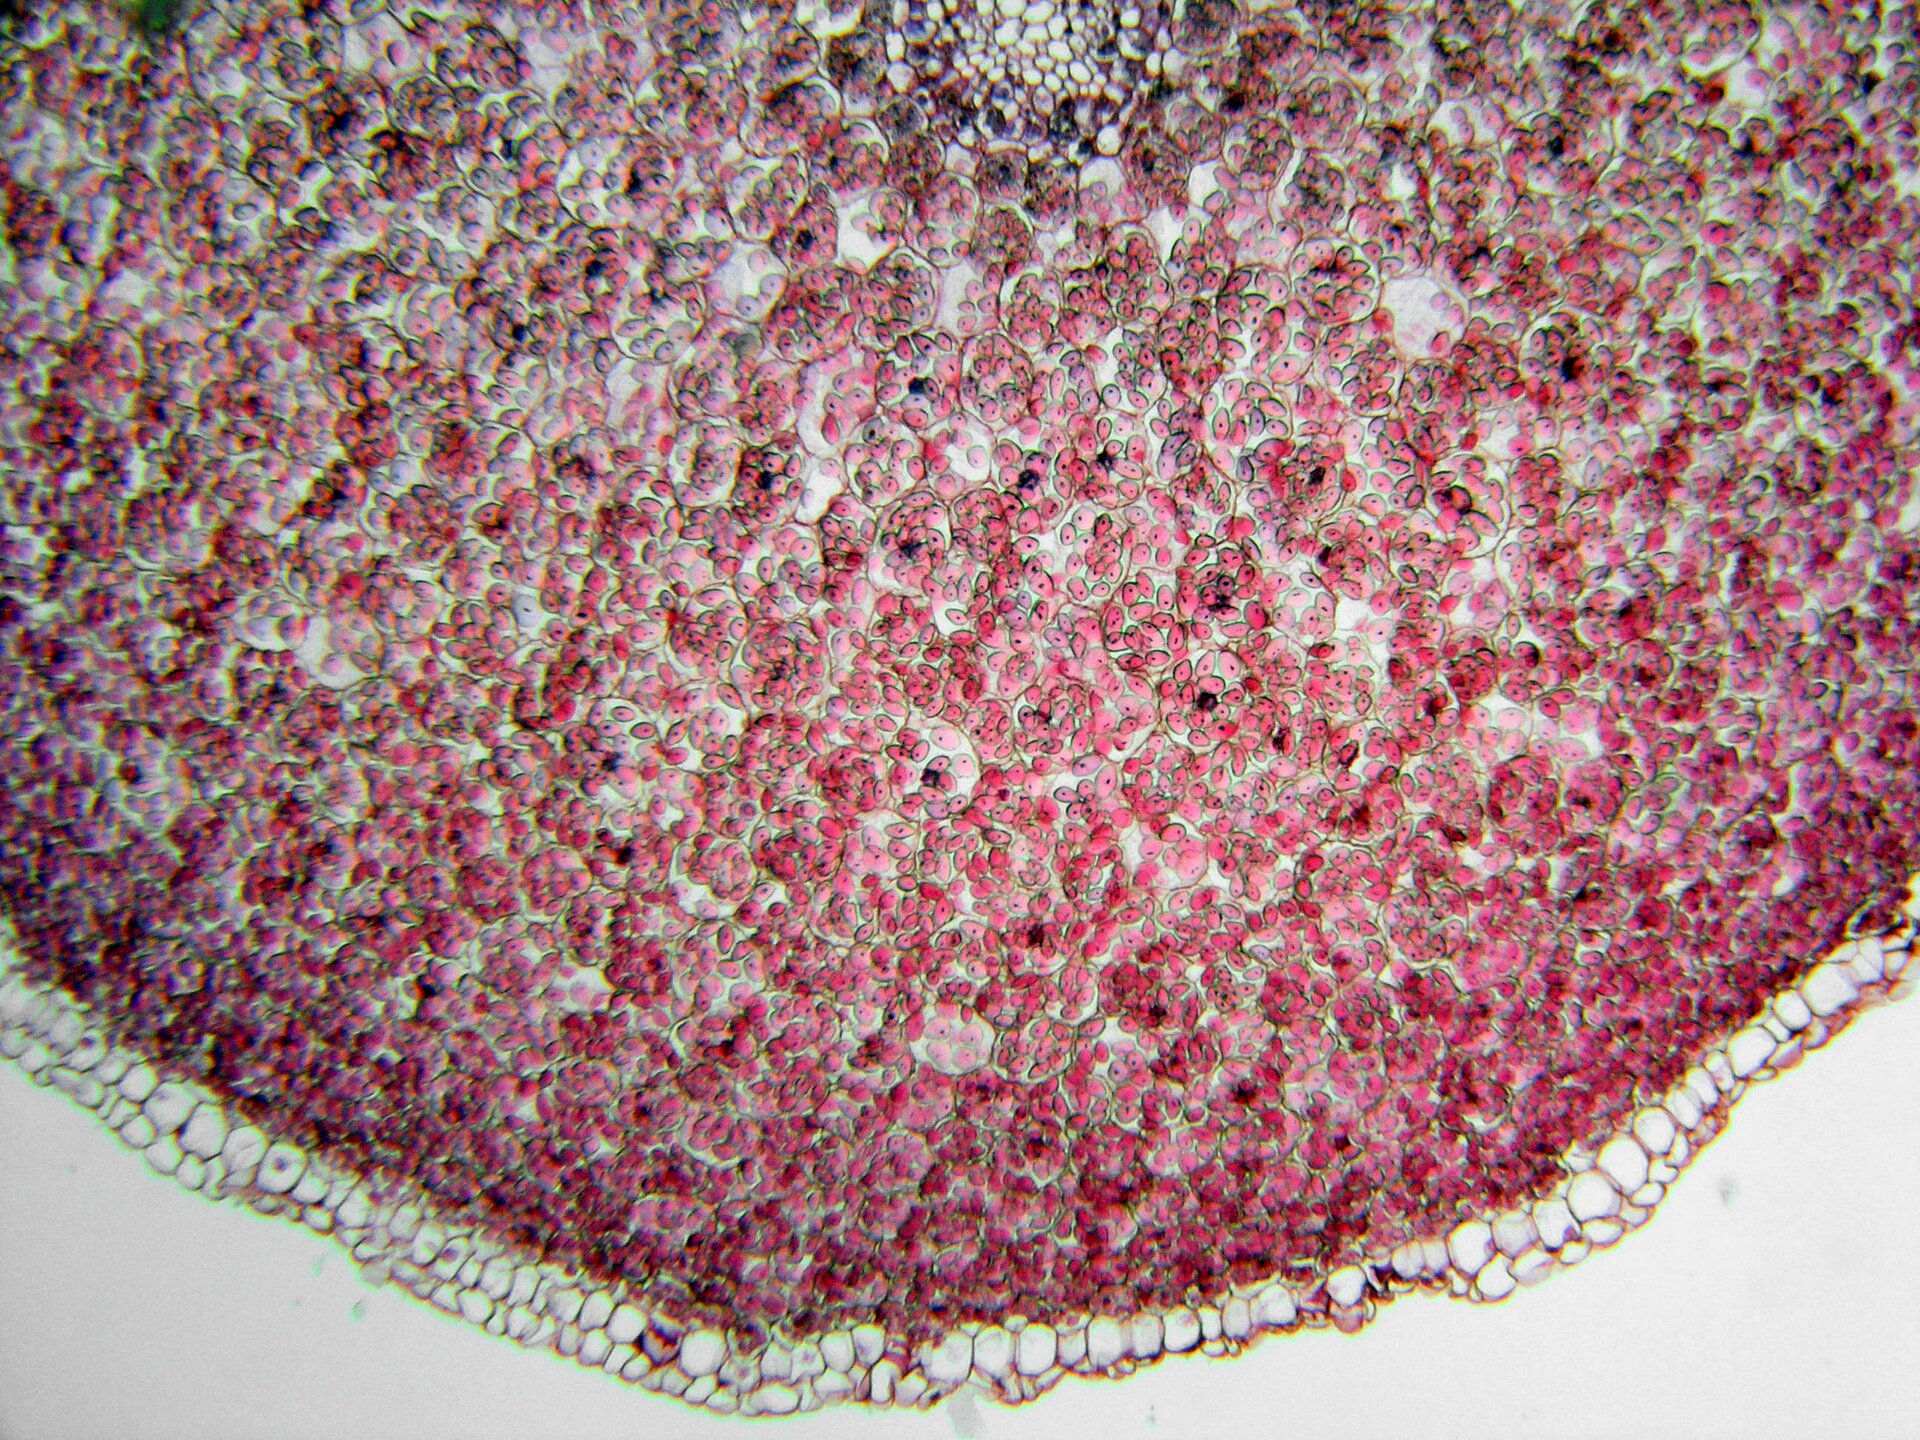 Zdjęcie przedstawia komórki miękiszowe pod mikroskopem. Komórki mają zaokrąglony kształt i jasnoróżową barwę. Znajdują się w dużym skupisku. Usytuowane są blisko siebie, pozostawiając niewielką przestrzeń pomiędzy nimi.